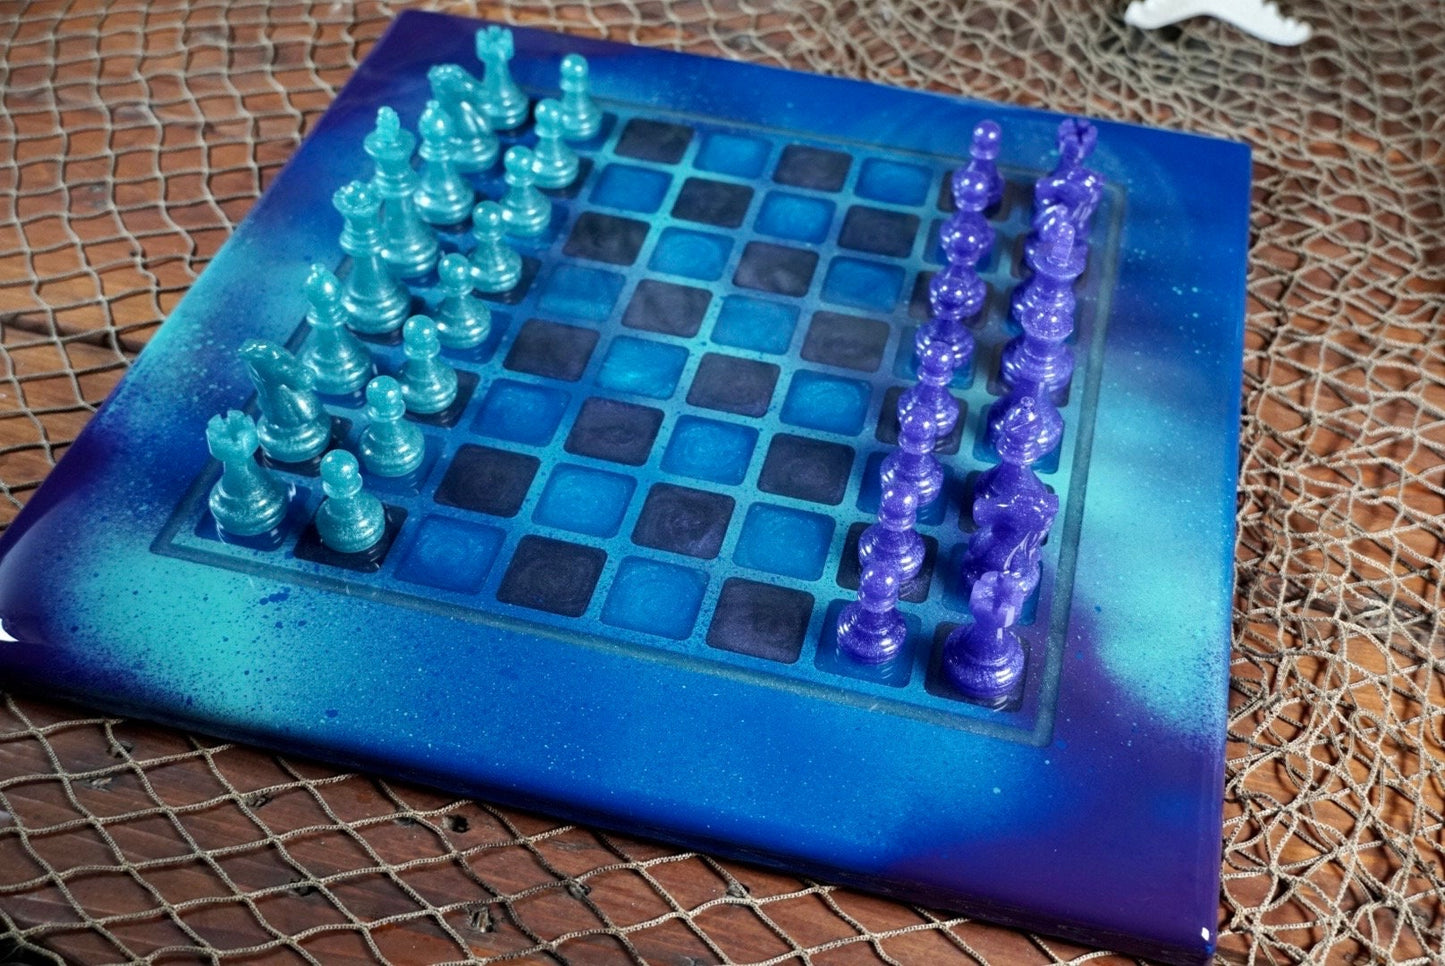 Chess set with Graffiti theme board